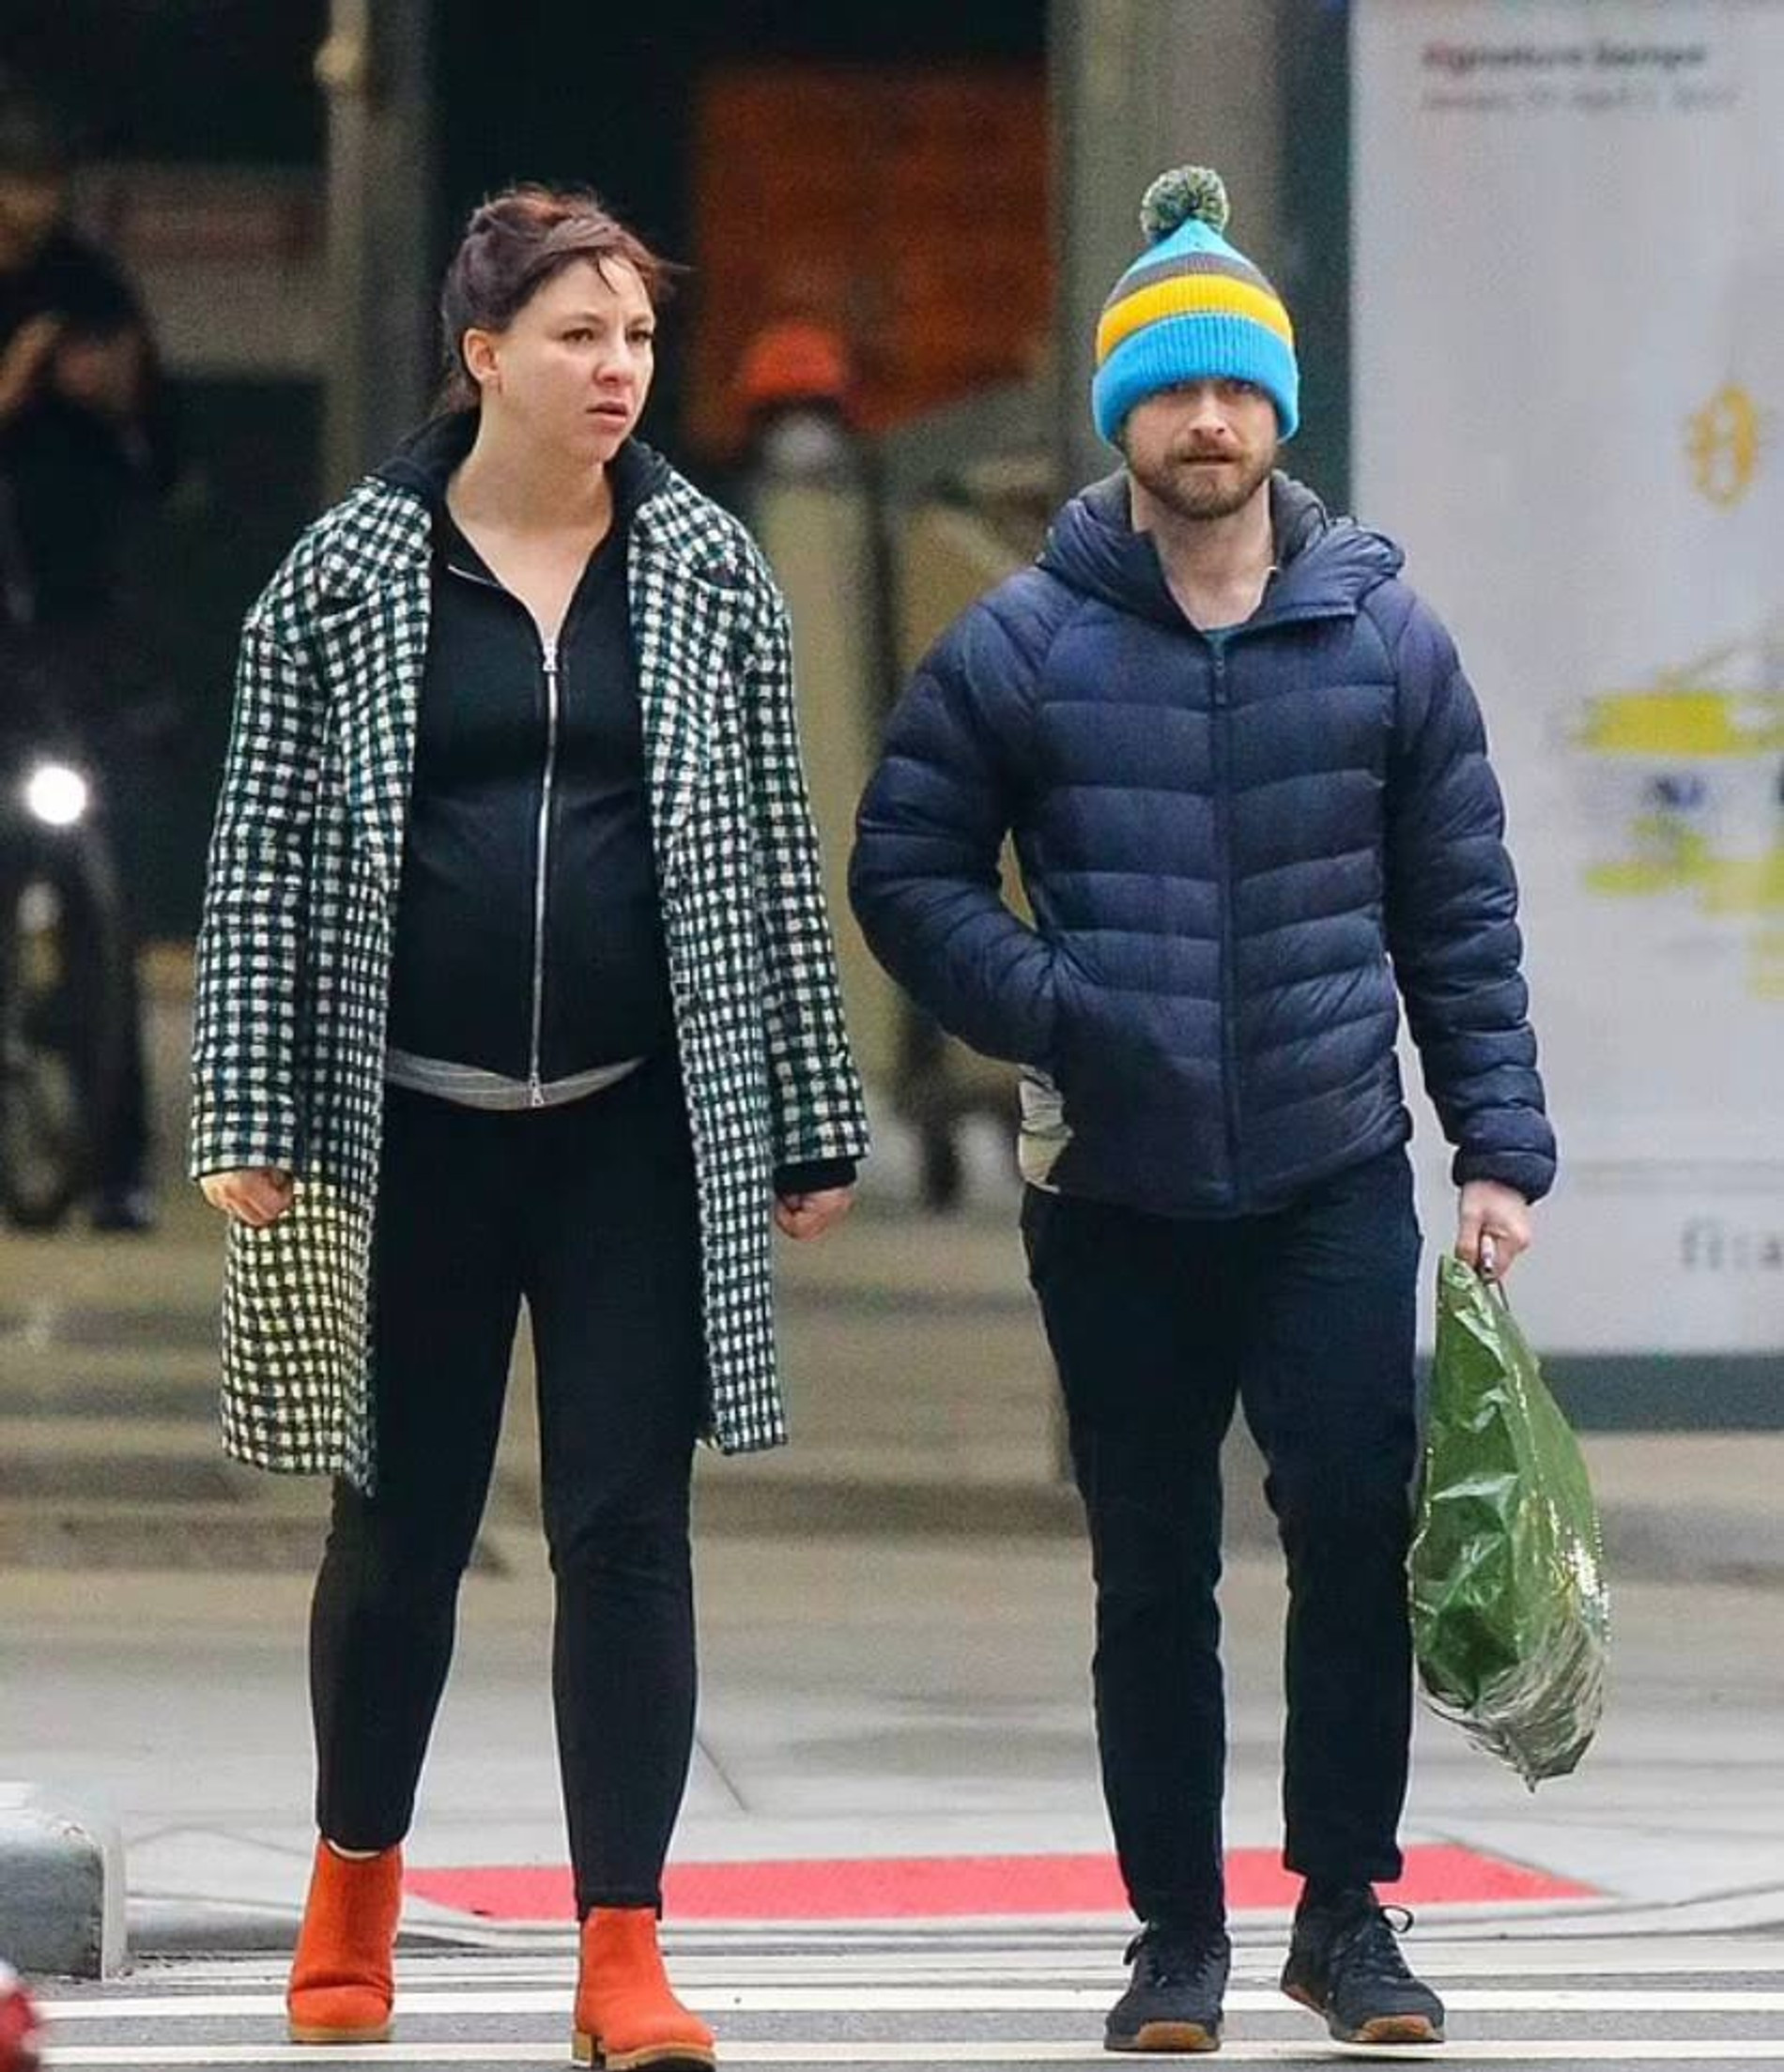 Эрин и Дэниел на прогулке в Нью-Йорке
Фото: Daily Mail